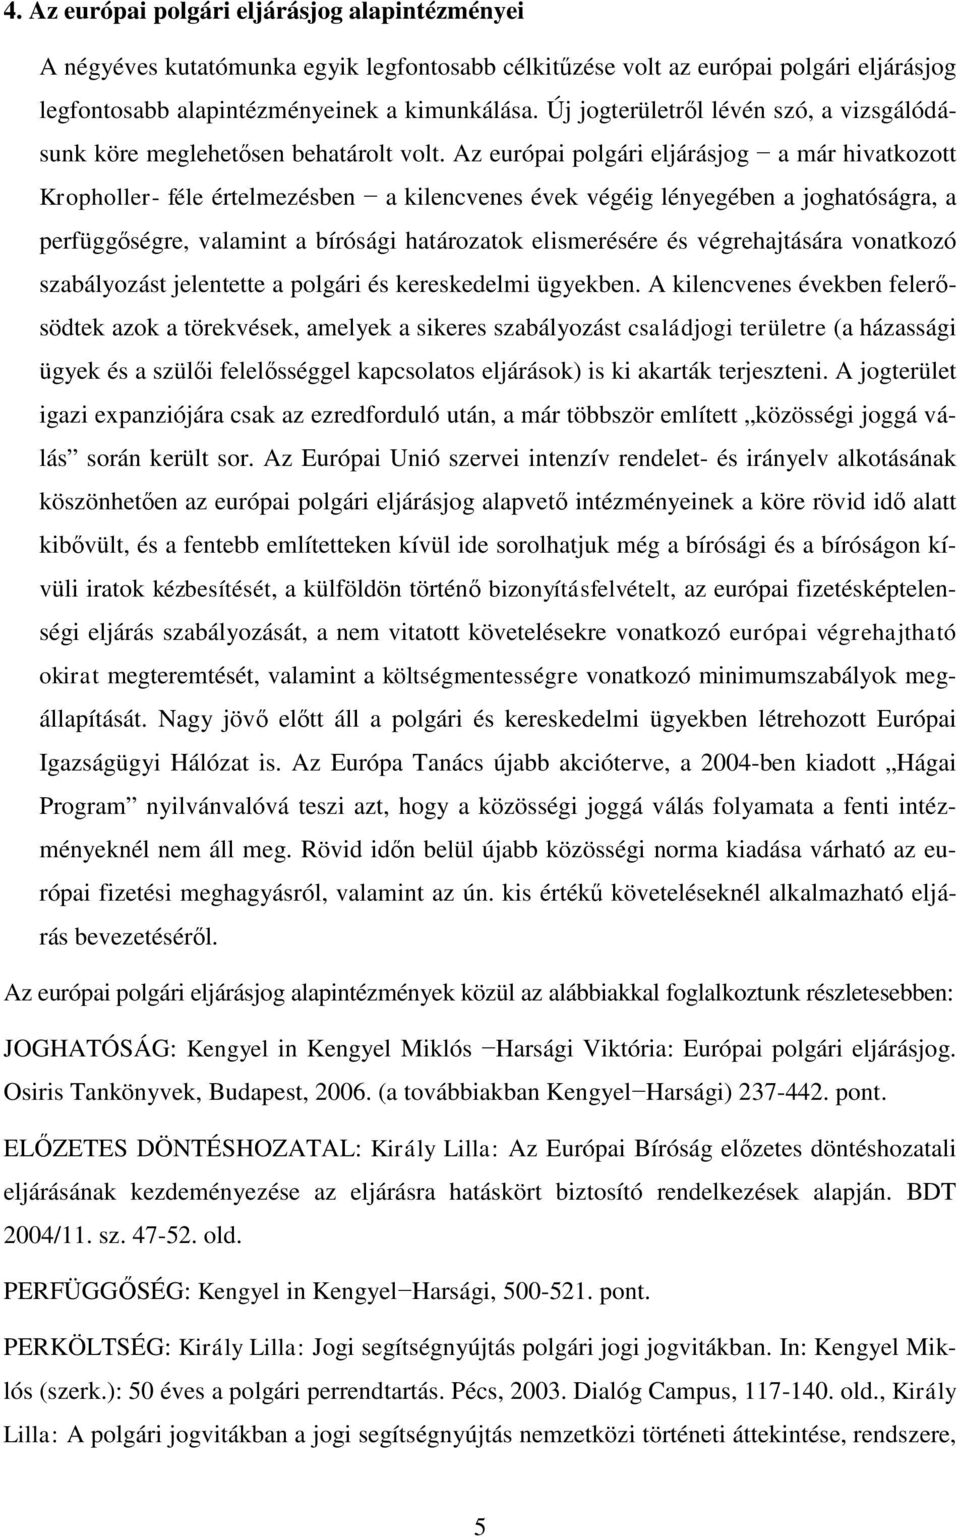 Az európai polgári eljárásjog a már hivatkozott Kropholler- féle értelmezésben a kilencvenes évek végéig lényegében a joghatóságra, a perfüggőségre, valamint a bírósági határozatok elismerésére és